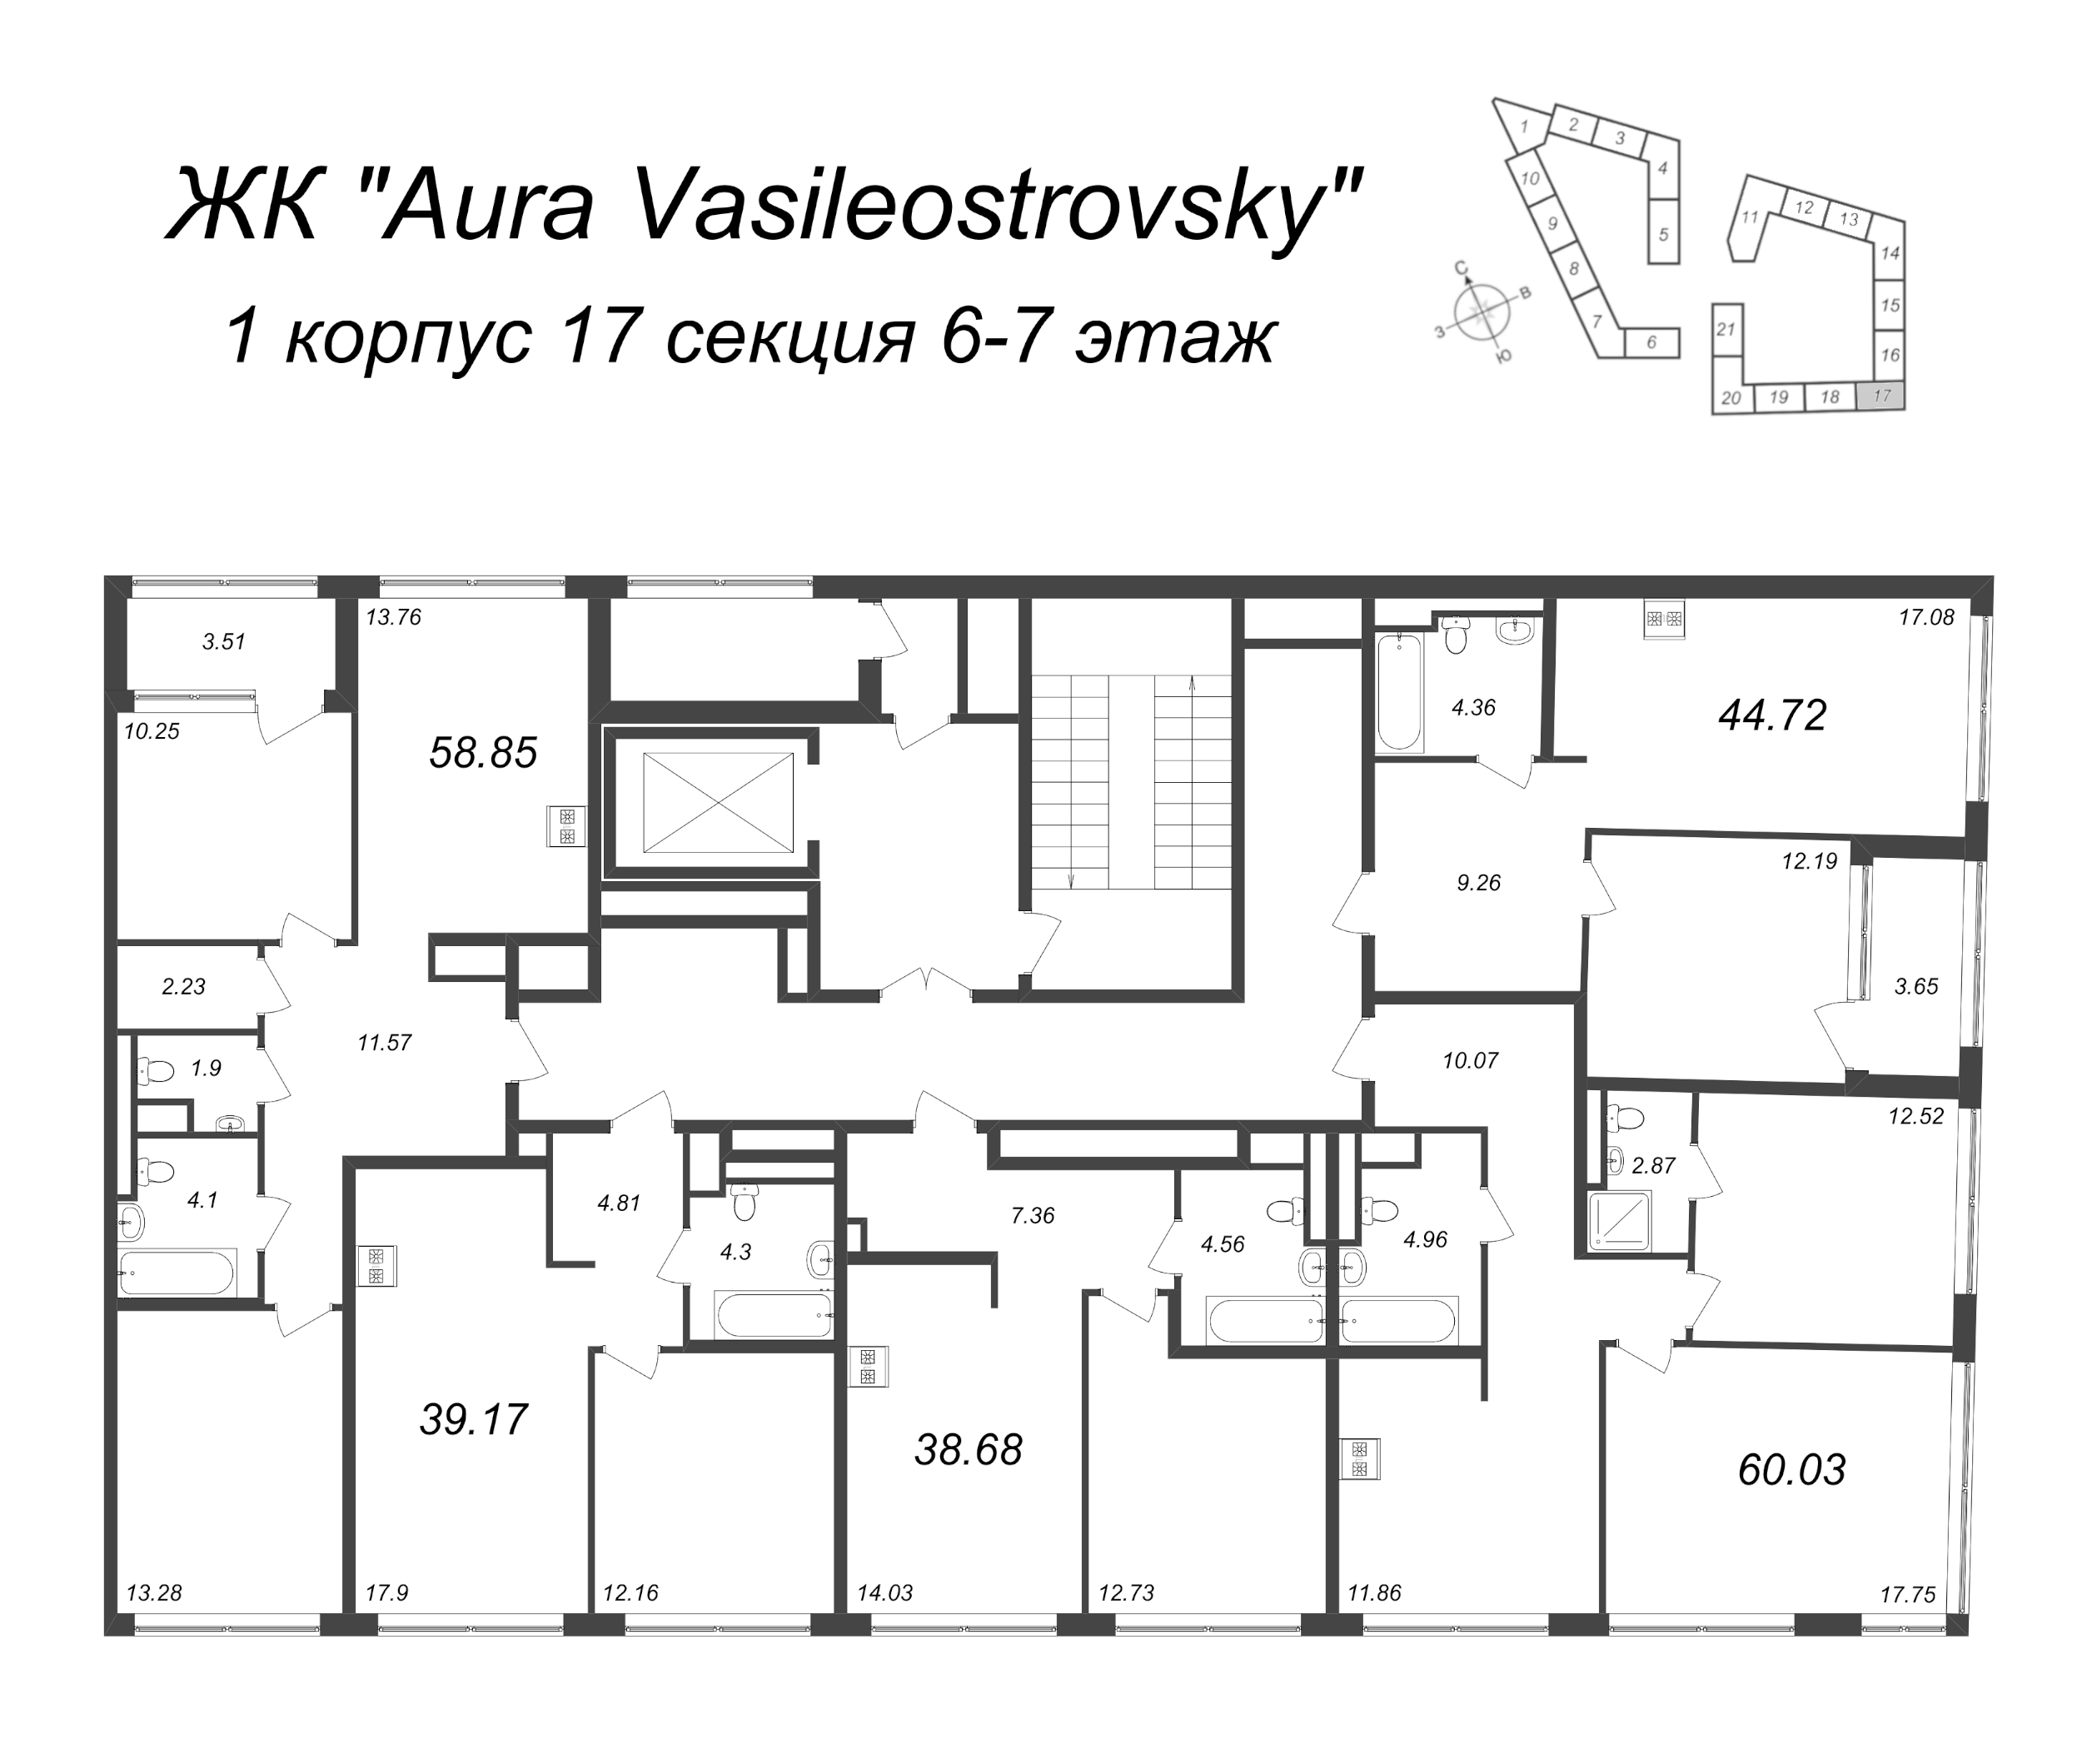 2-комнатная (Евро) квартира, 39.17 м² в ЖК "GloraX Premium Василеостровский" - планировка этажа